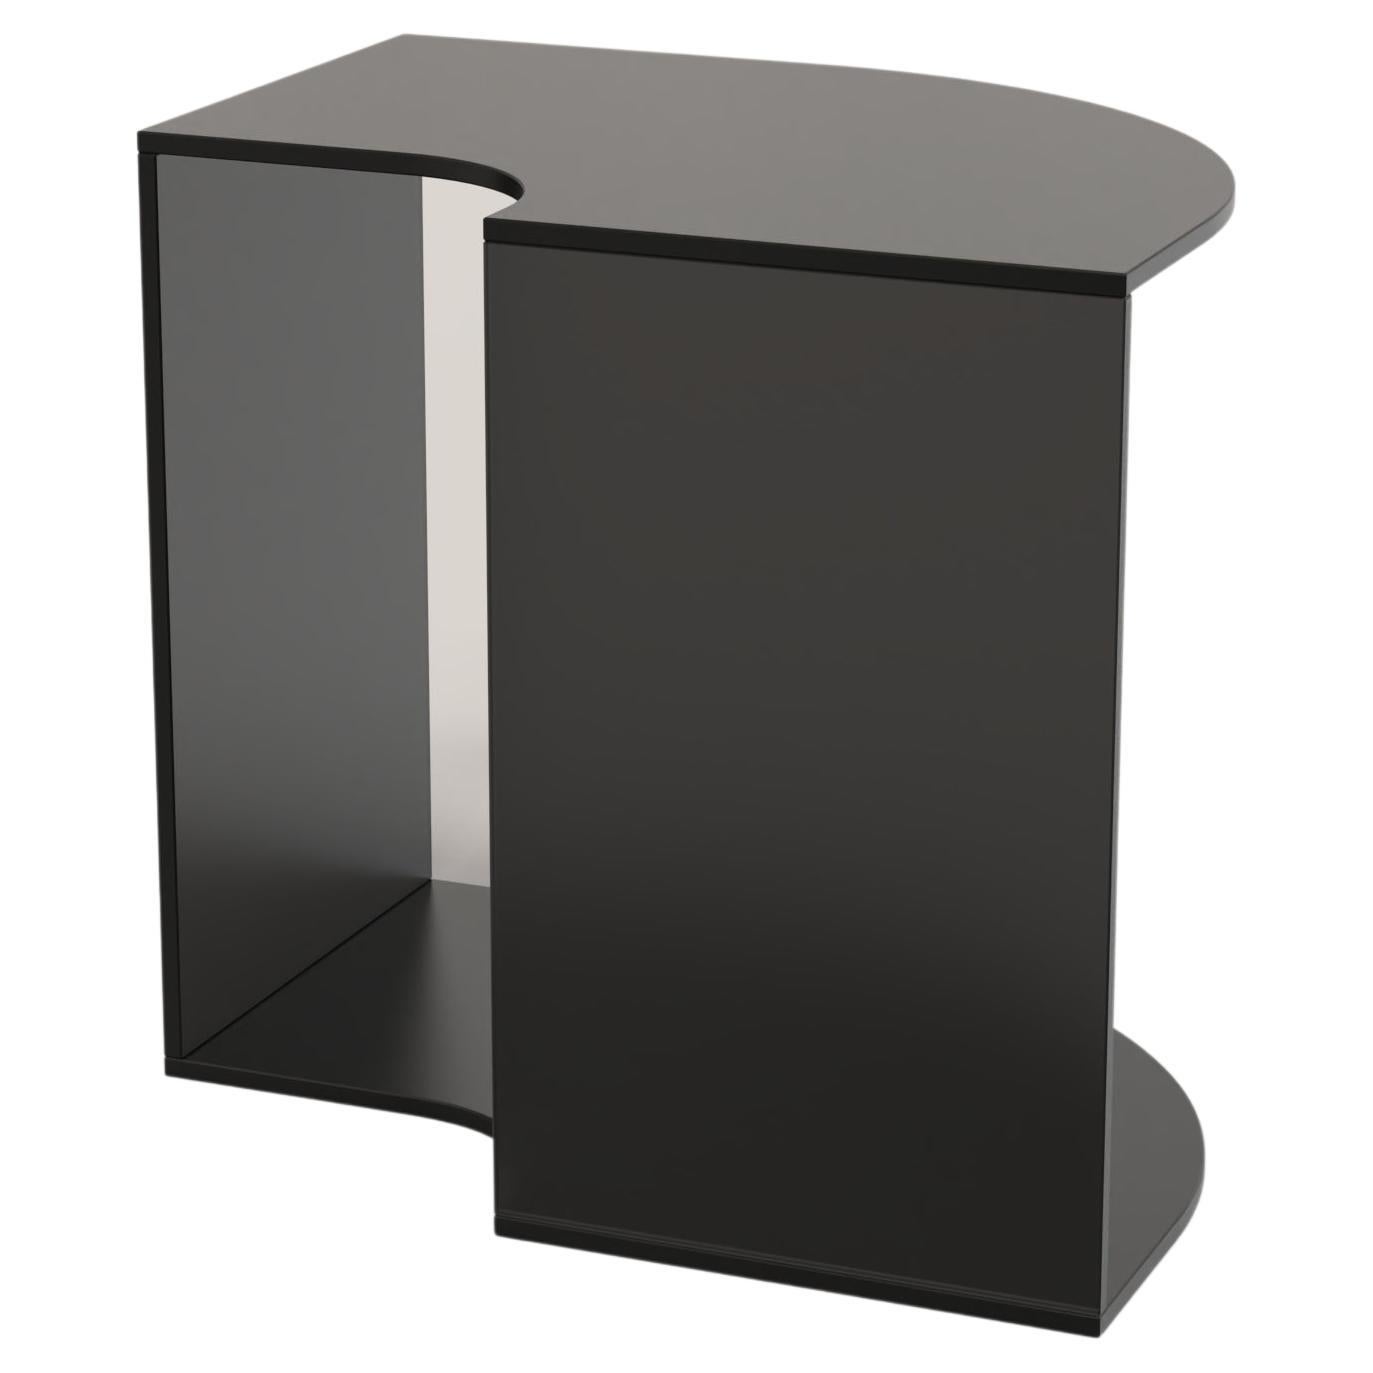 Contemporary Limited Edition Black Glass Table, Quarter V1 by Edizione Limitata